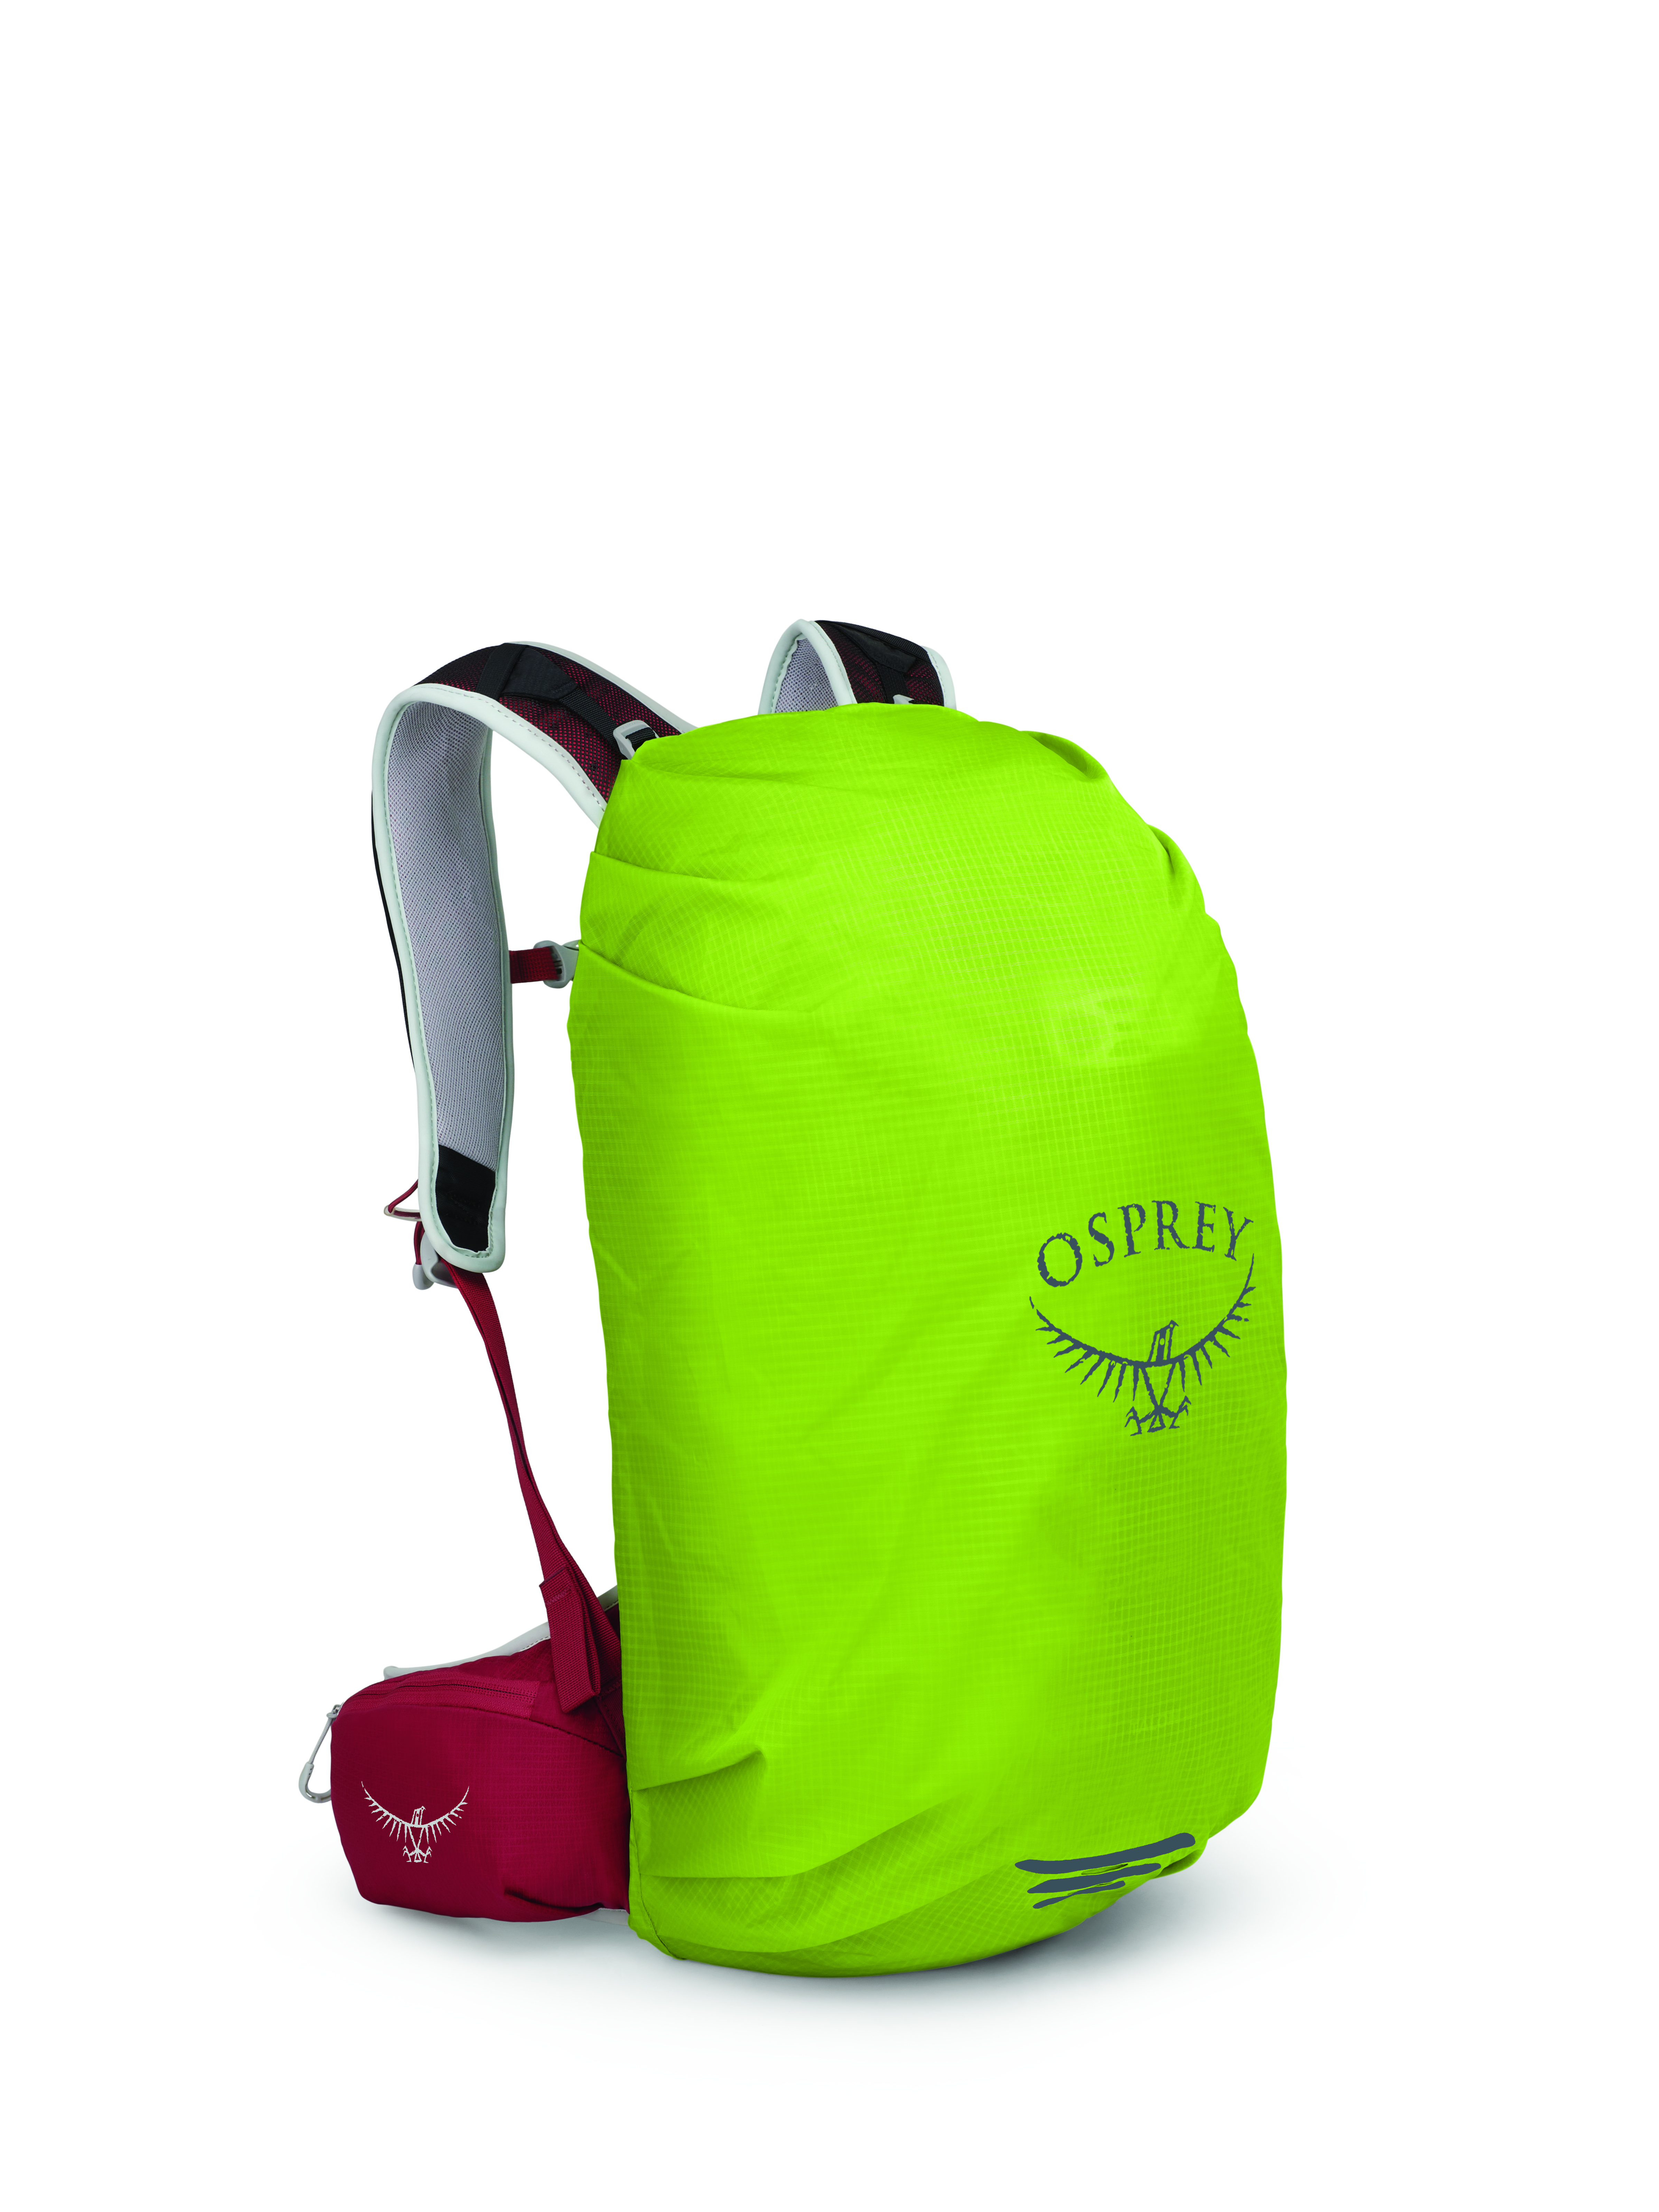 Pláštěnka na batoh Osprey HIVIS RAINCOVER XS limon green